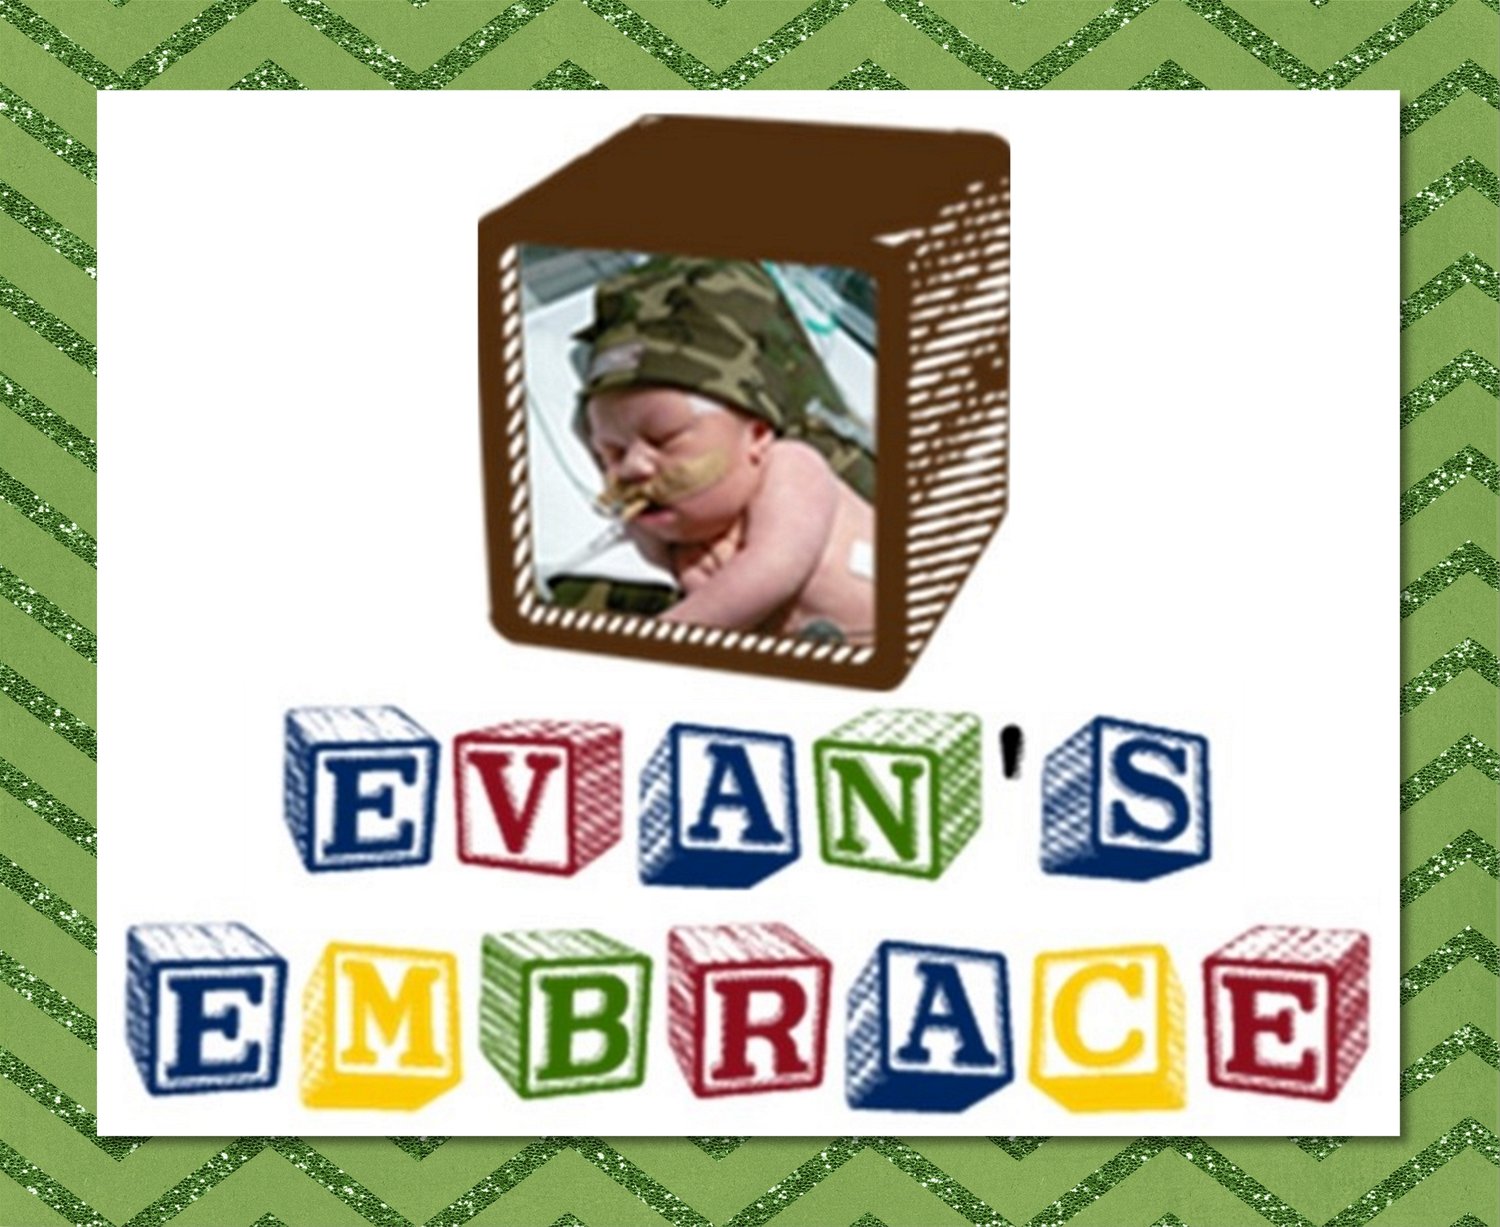 EVAN'S EMBRACE